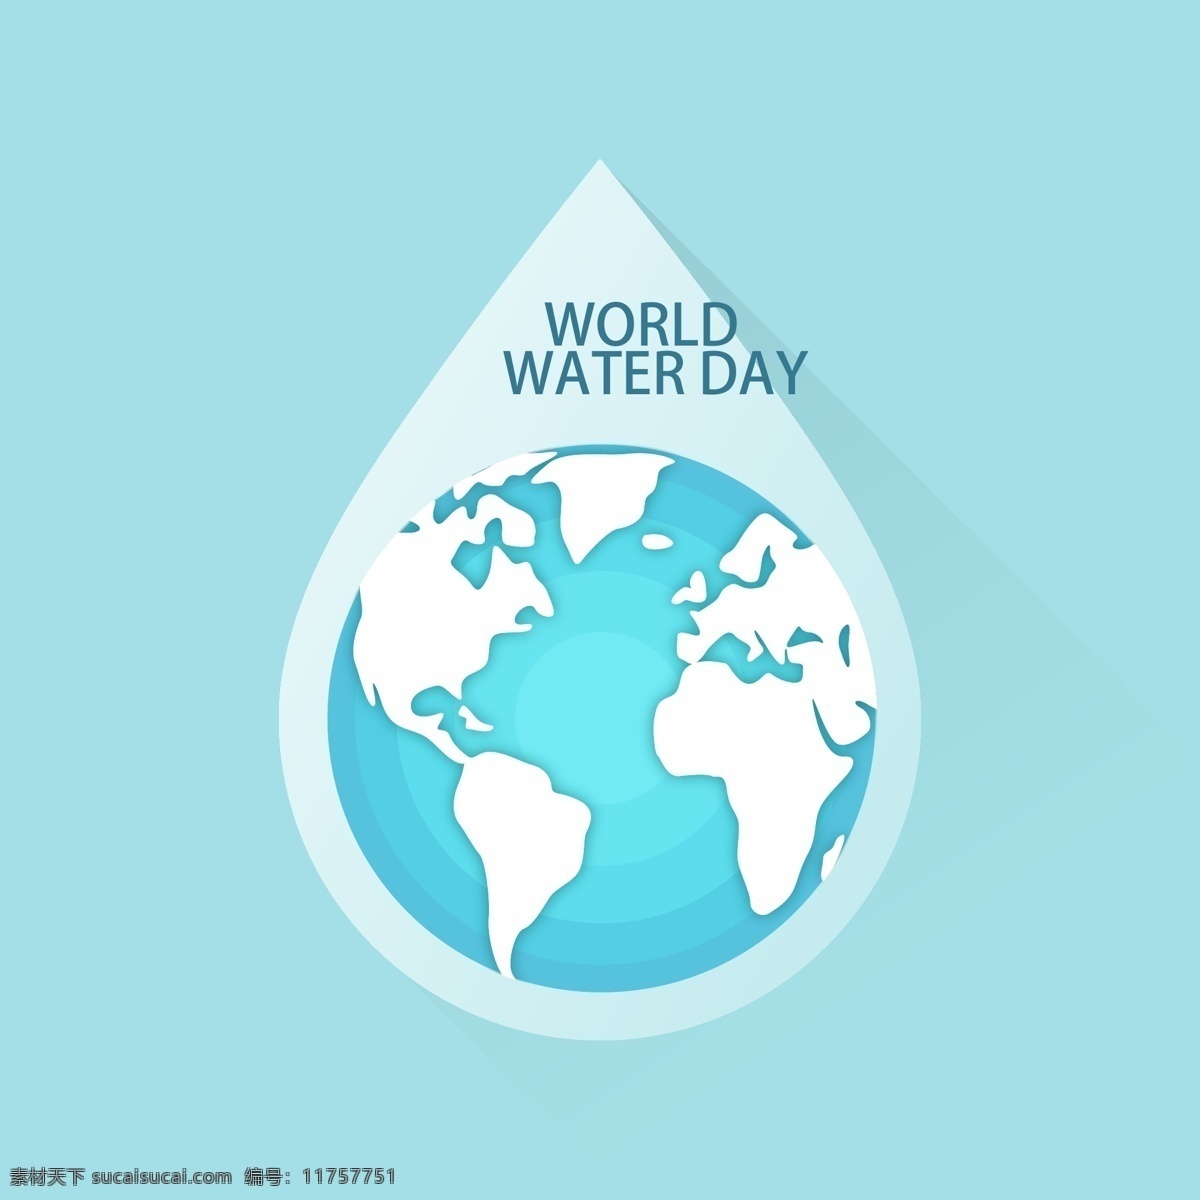 创意 世界 水日 贺卡 矢量 地球 水滴 水资源 world water day 国际水资源日 世界水日 节水 商务金融 商业插画